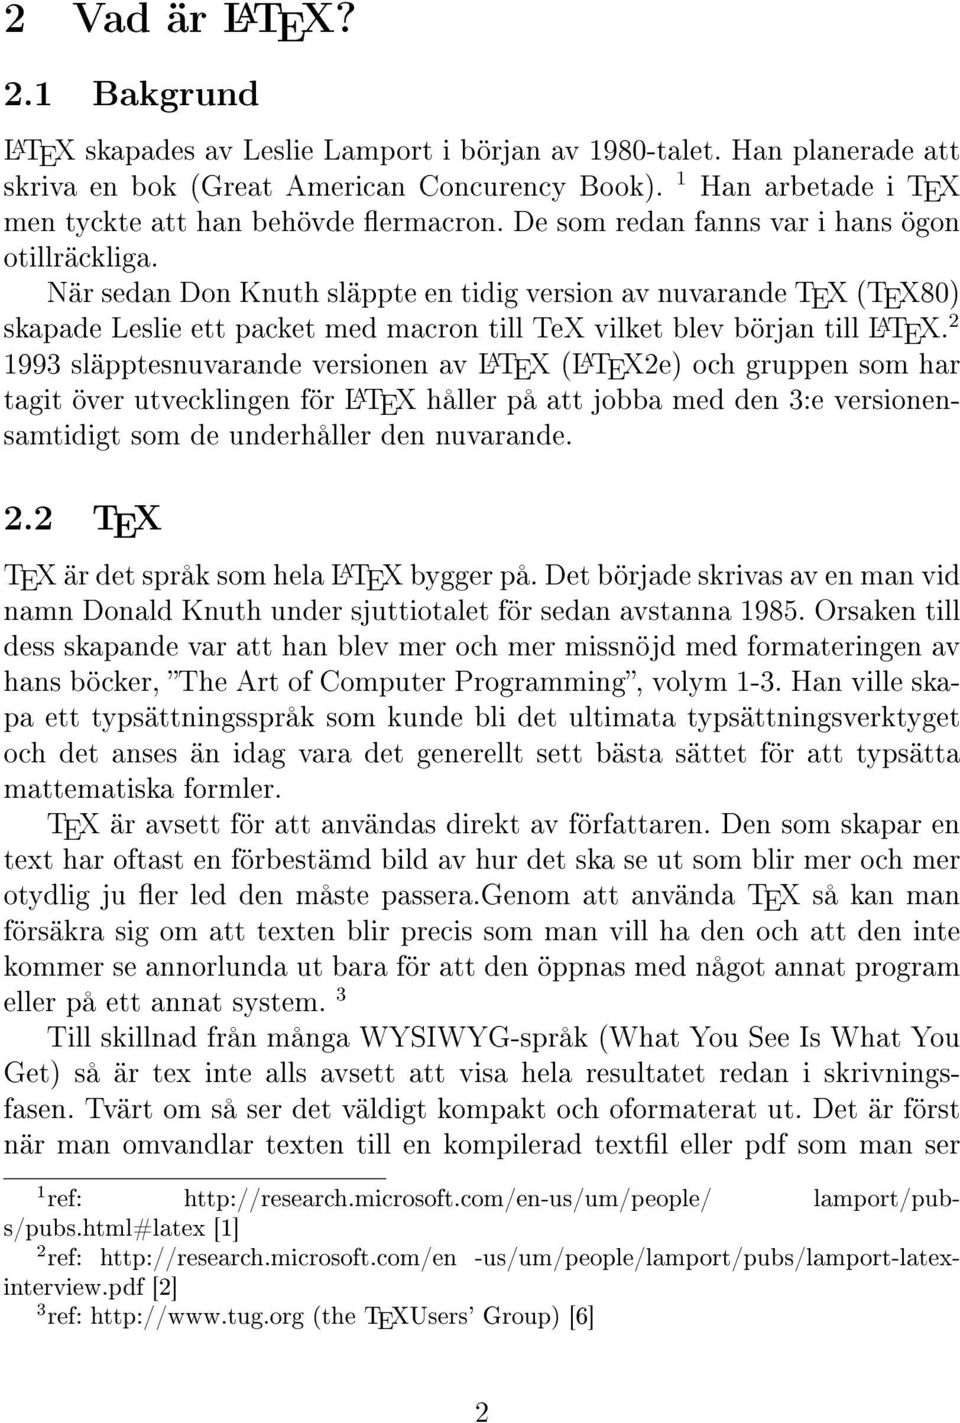 När sedan Don Knuth släppte en tidig version av nuvarande TEX (TEX80) skapade Leslie ett packet med macron till TeX vilket blev början till L A TEX.